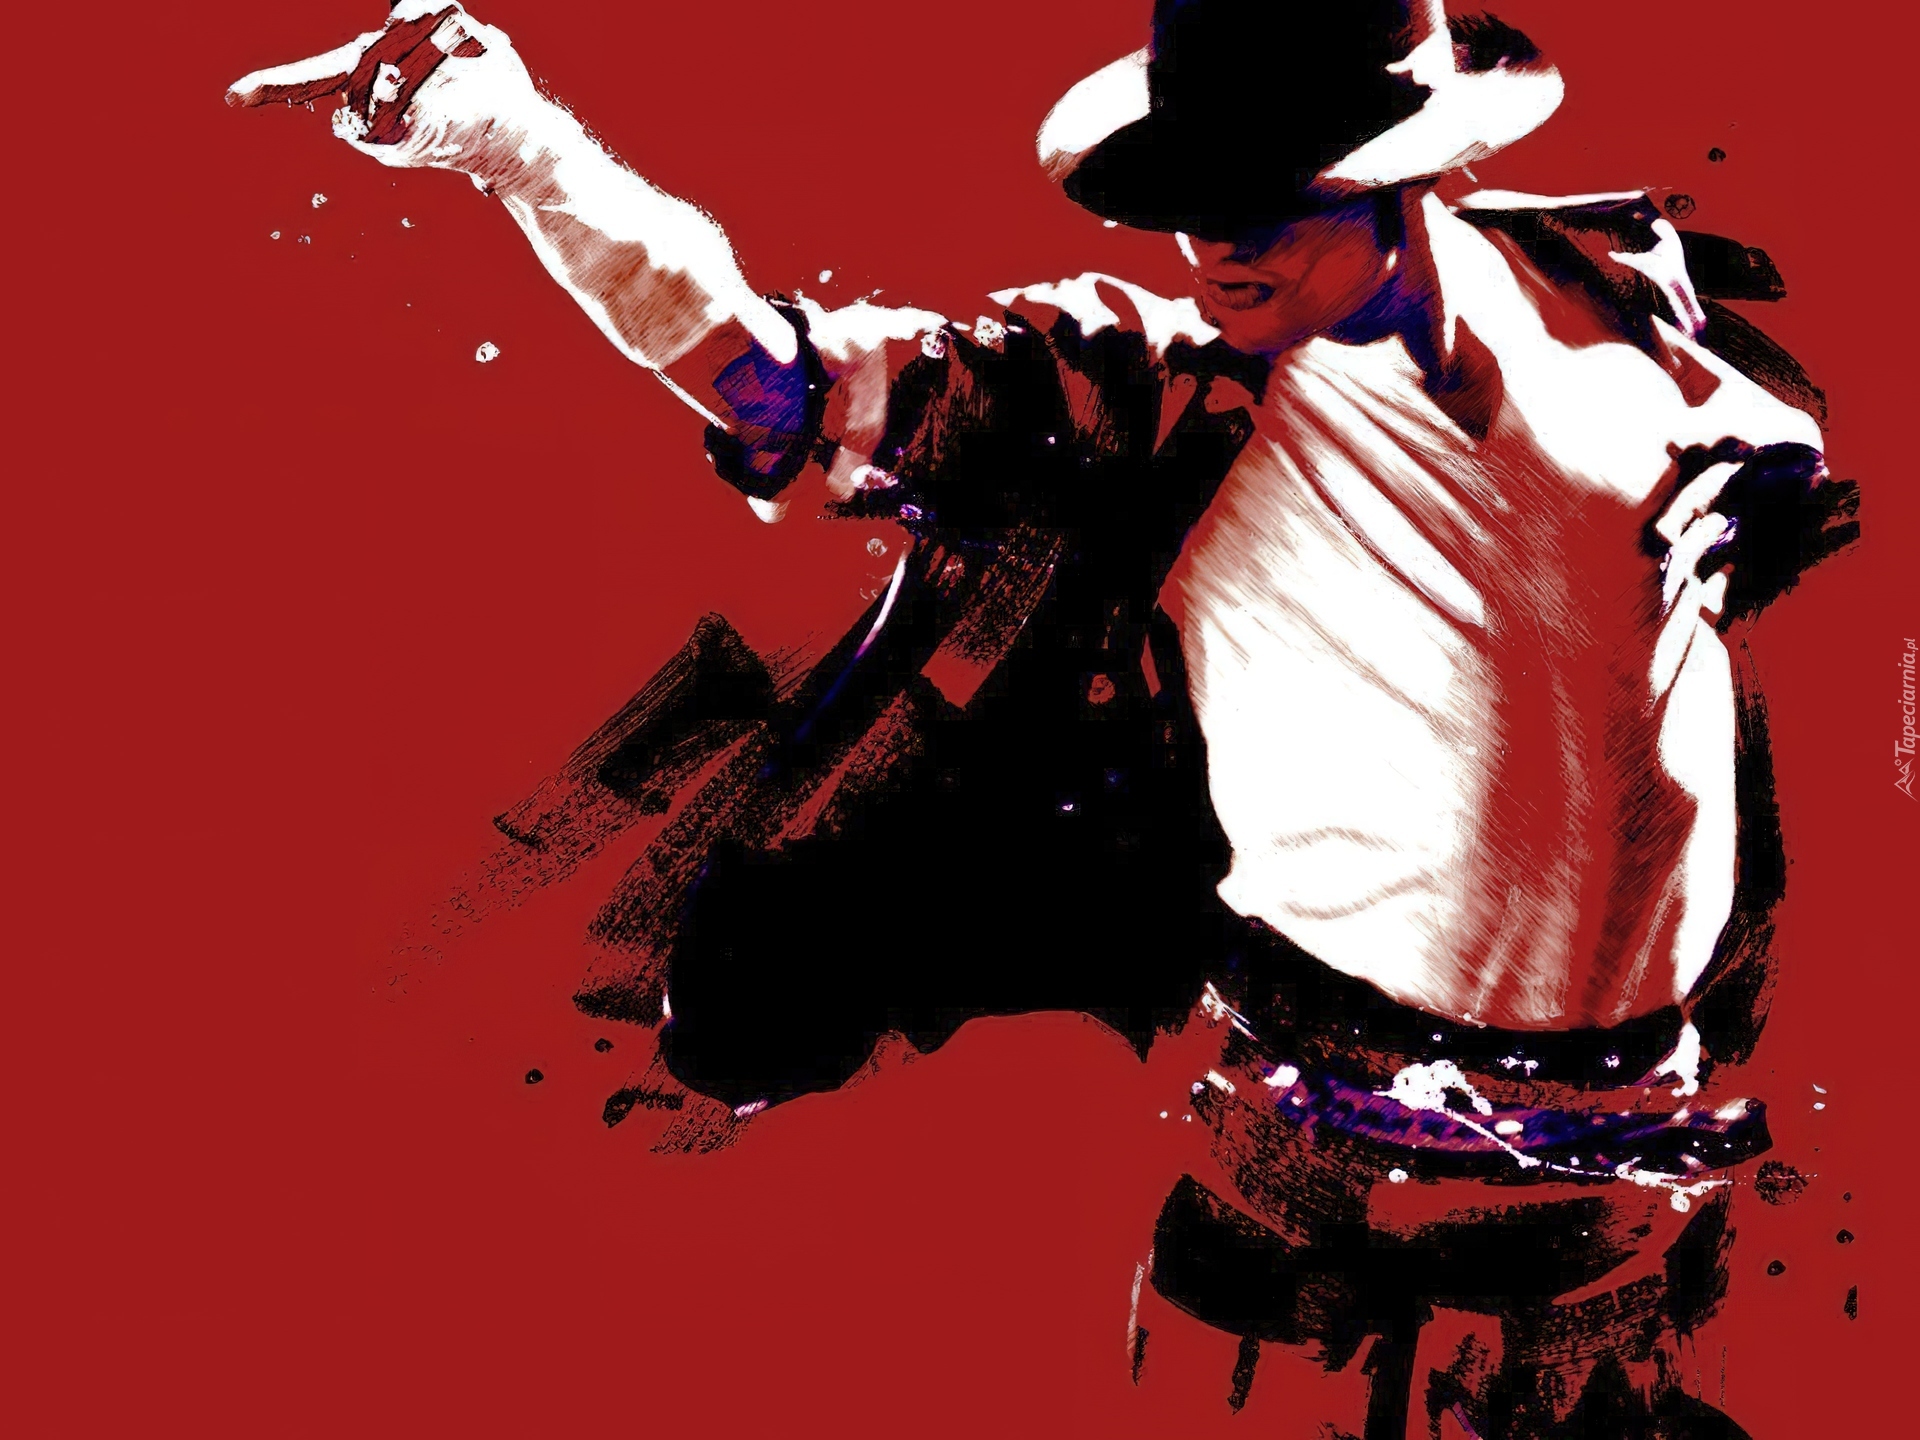 Michael jackson video. Michael Jackson. Michael Jackson 1994.